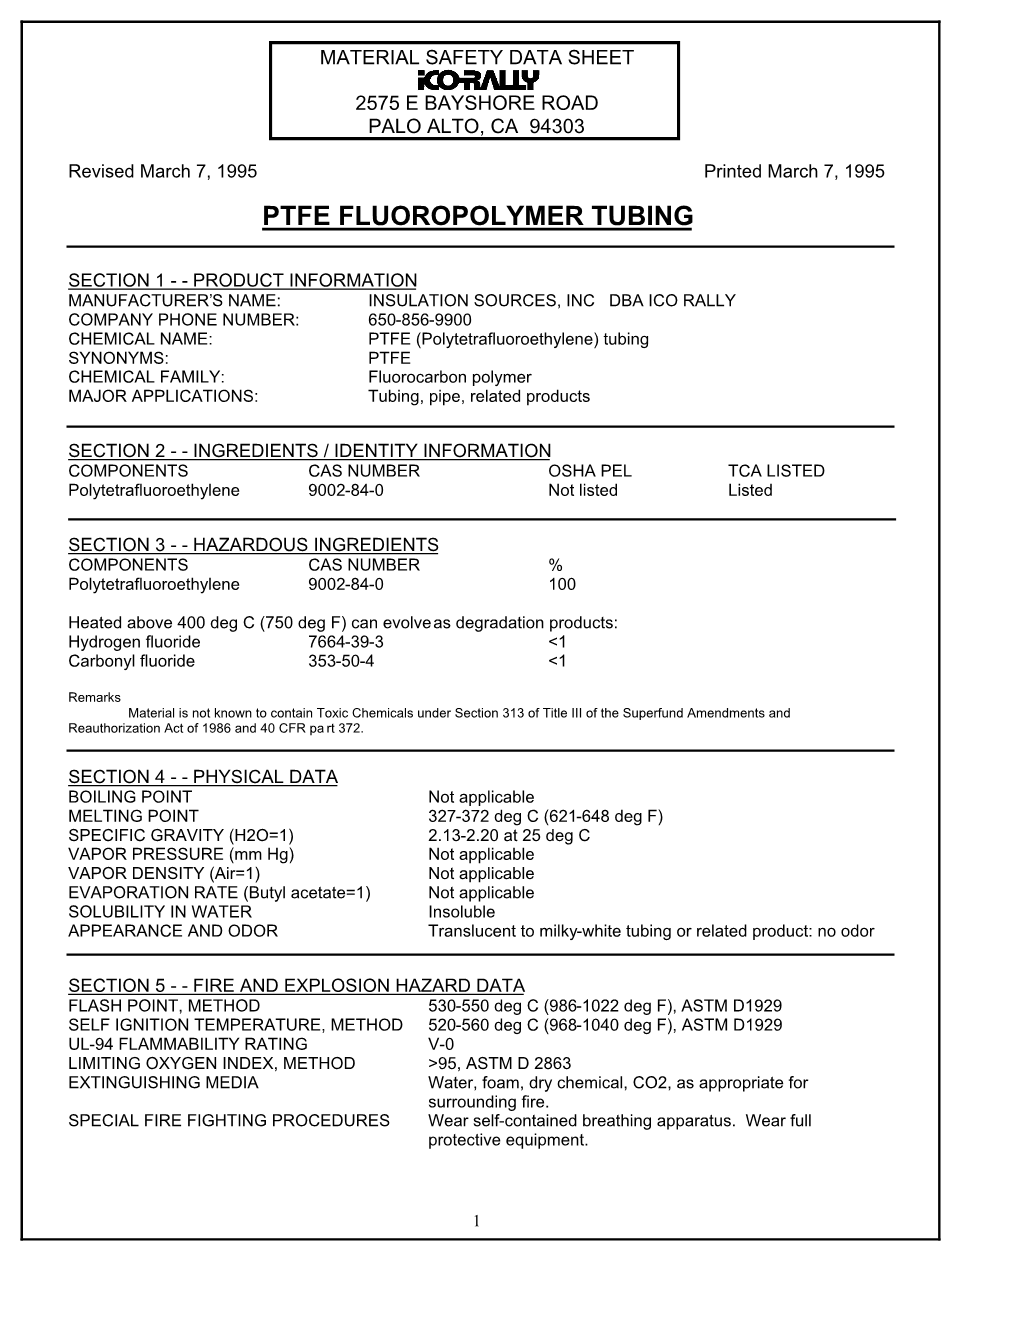 Ptfe Fluoropolymer Tubing